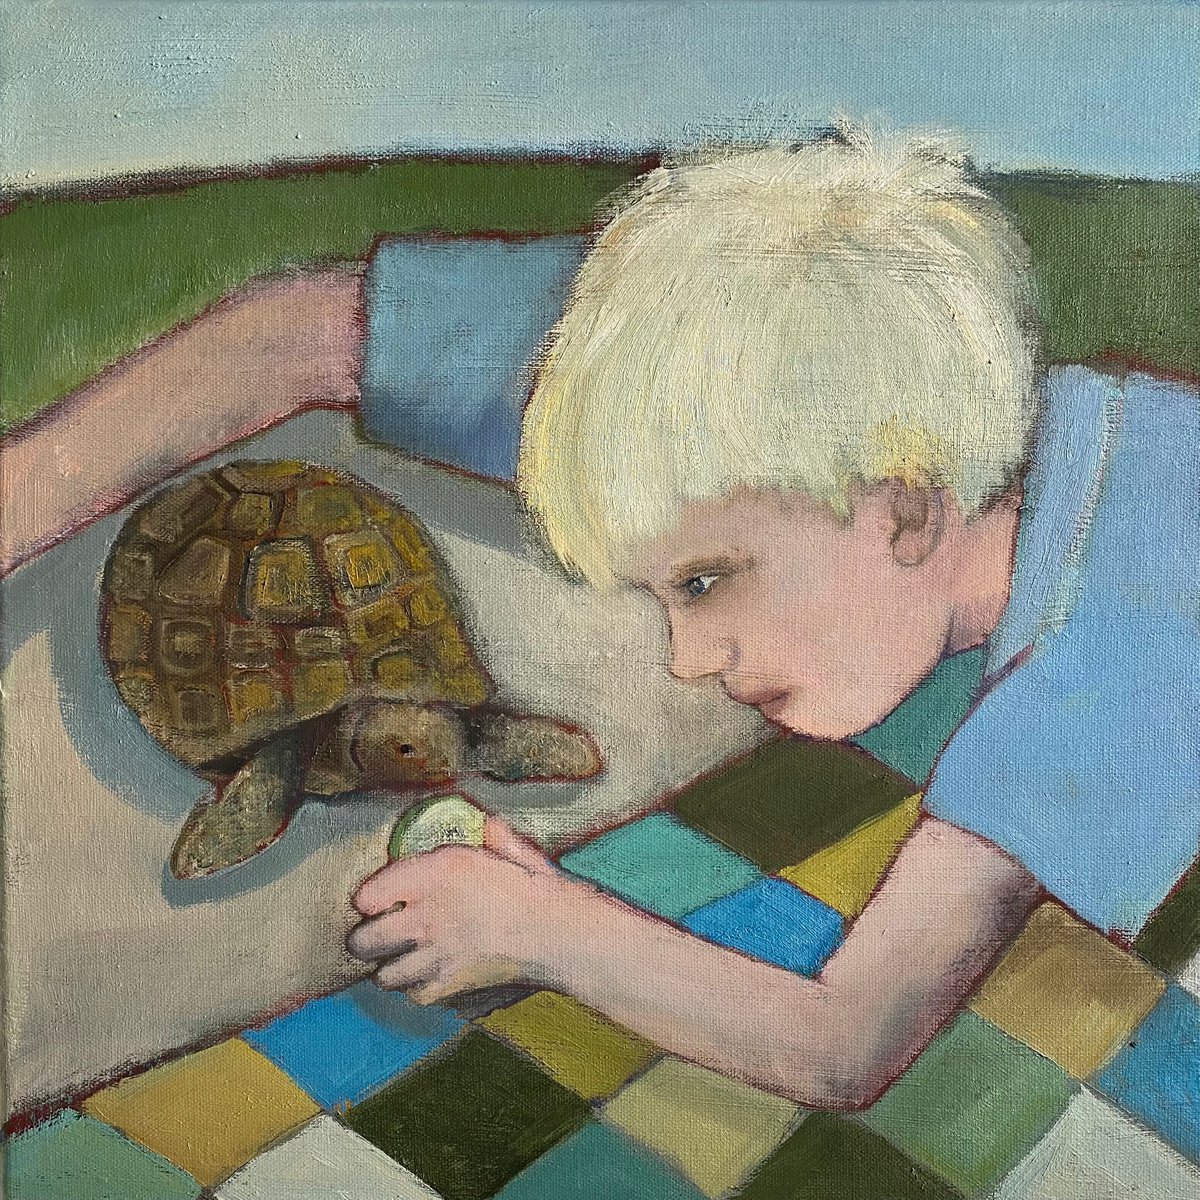 Boy Feeding His Tortoise by Nigel Sharman